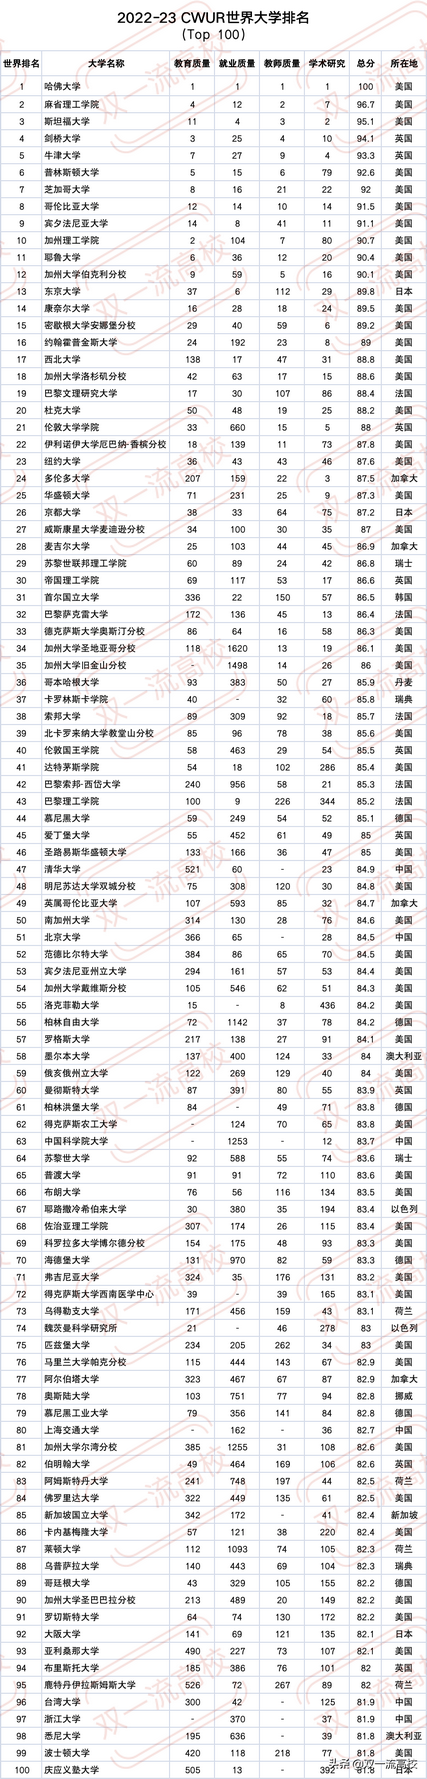 最新2022-23 世界大学排名出炉331所中国高校上榜,2022世界大学排名中国内地l137所